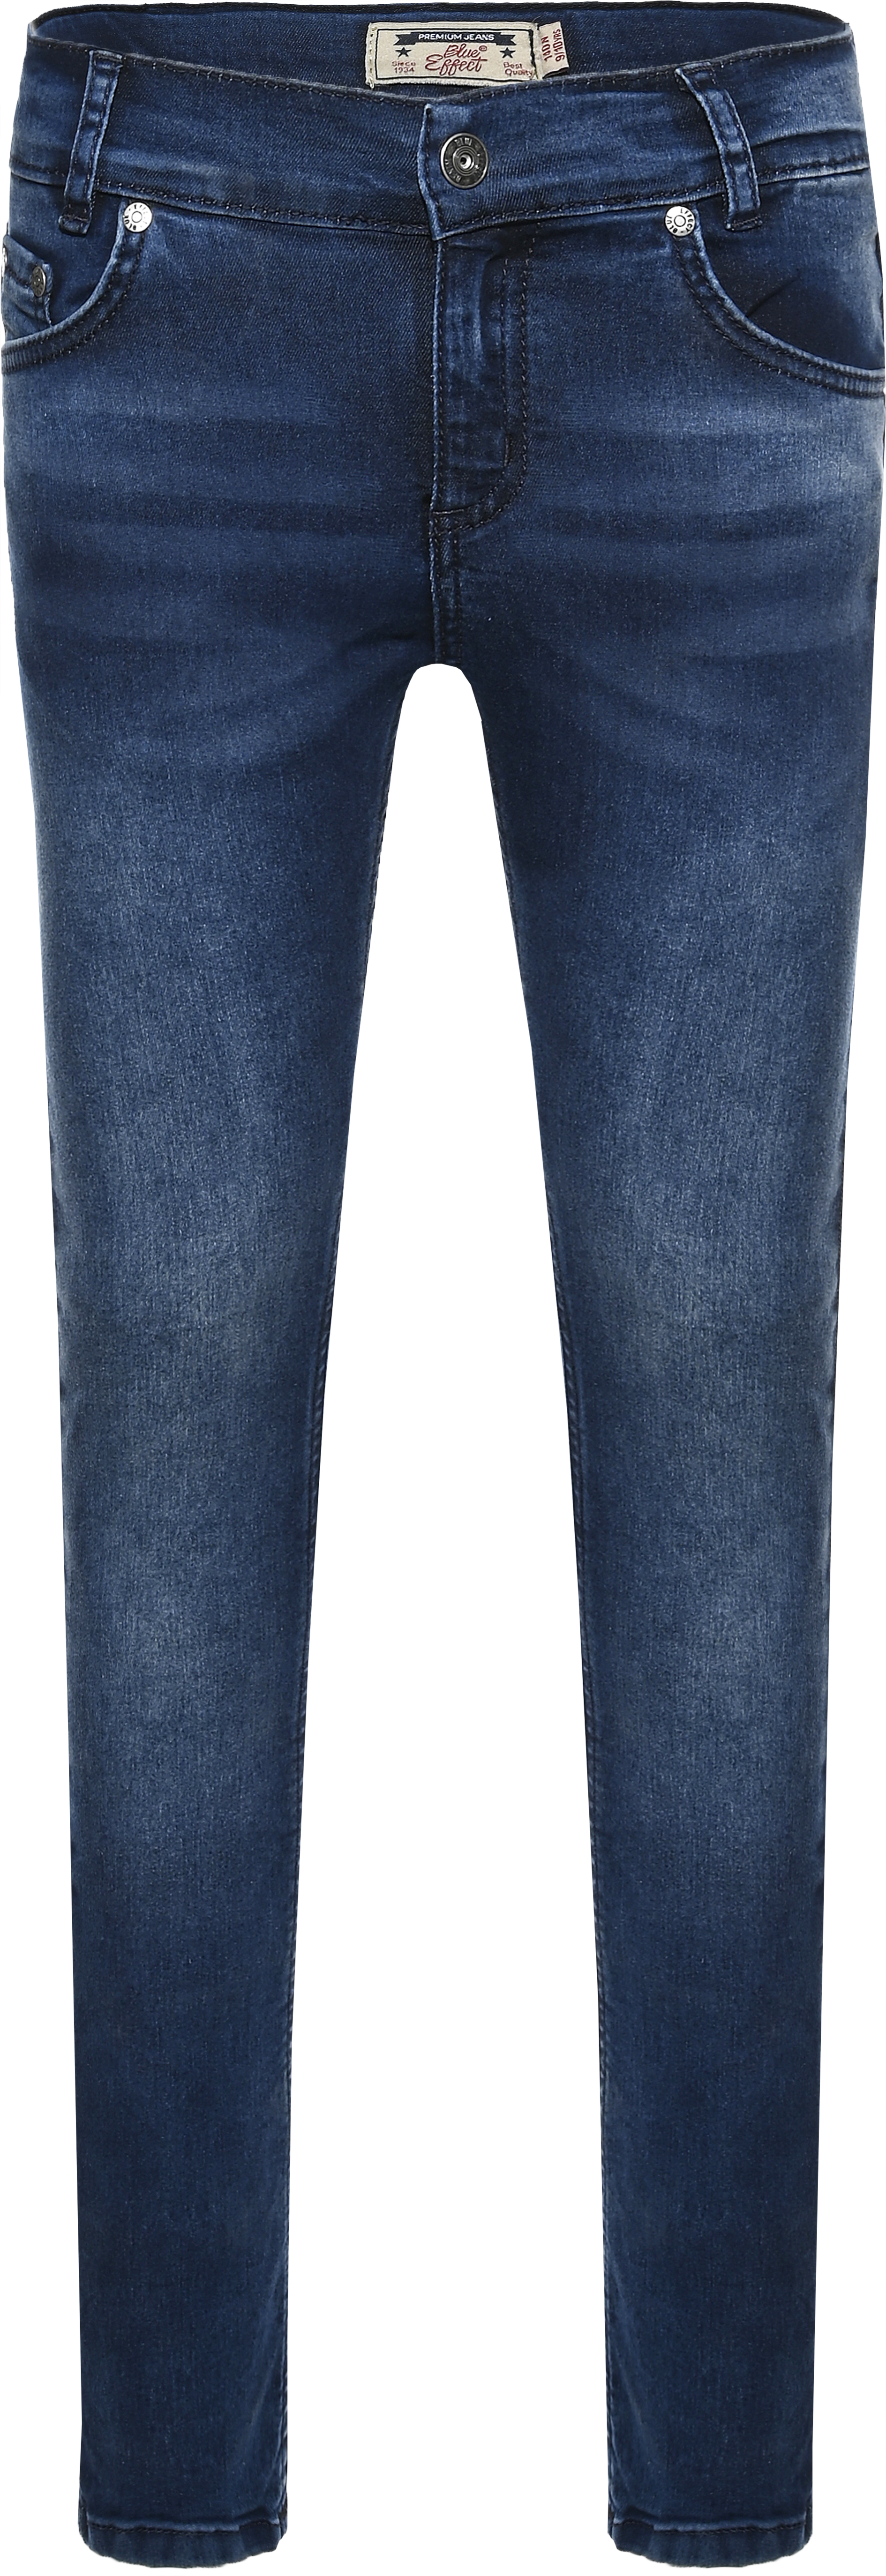 0233-NOS Boys Jeans Skinny verfügbar in Slim,Normal,Wide